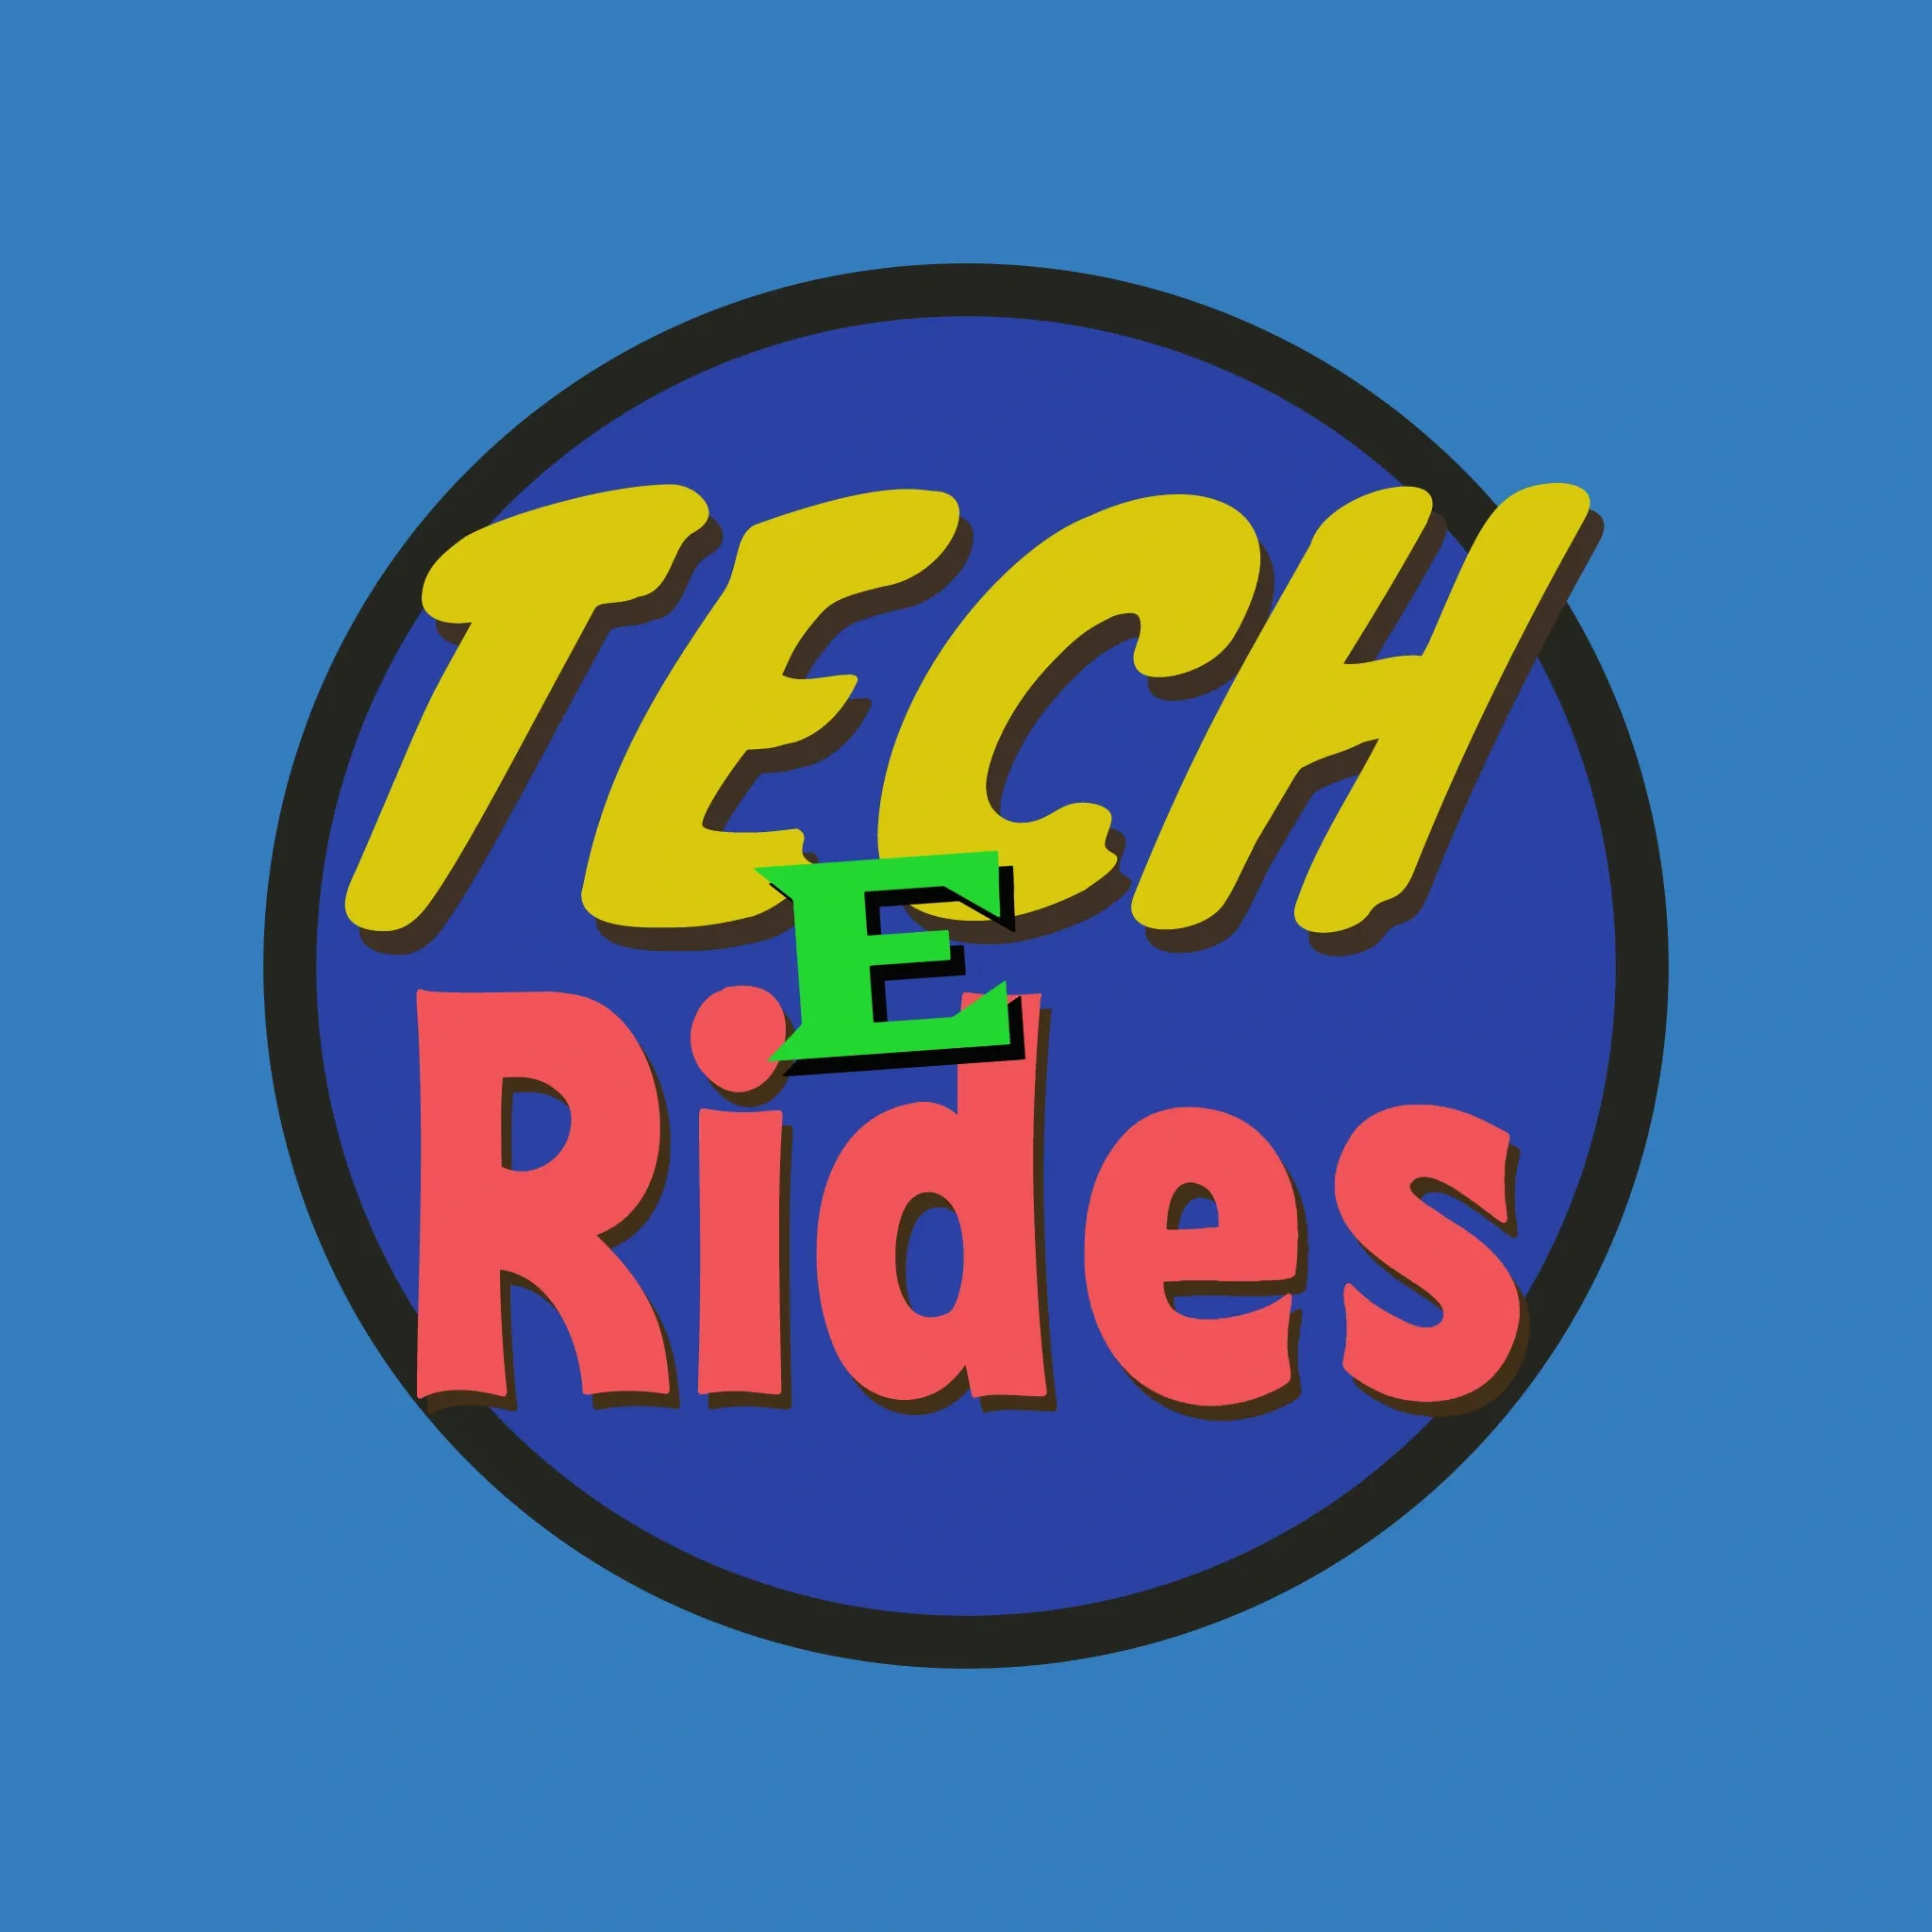 Tech E-rides